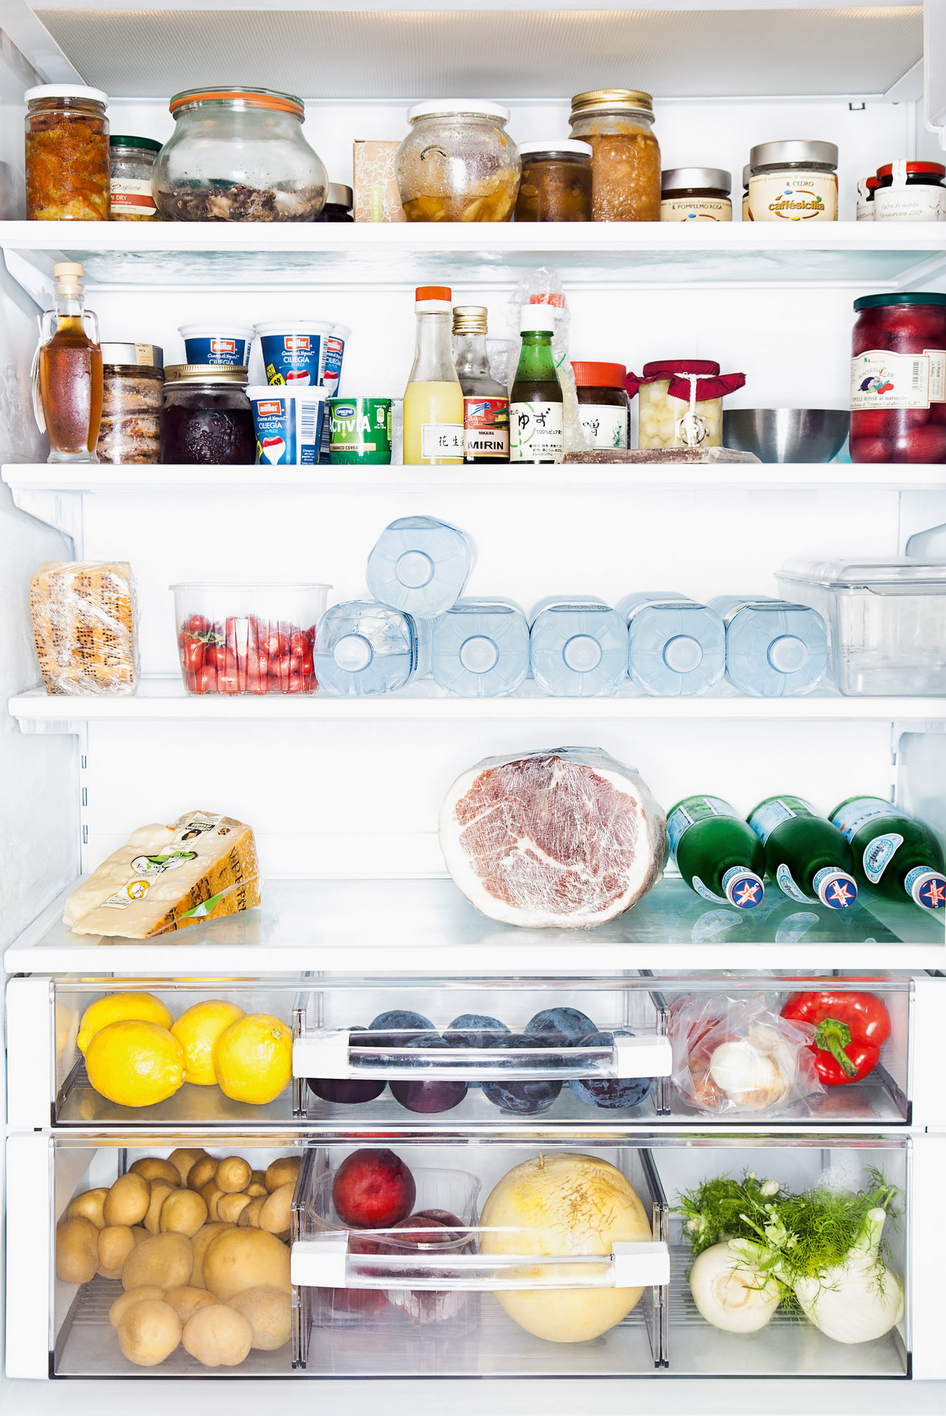 Какой продукт есть в холодильнике. Холодильник с продуктами. Полный холодильник продуктов. Холодильник с едой. Холодильник со здоровой едой.